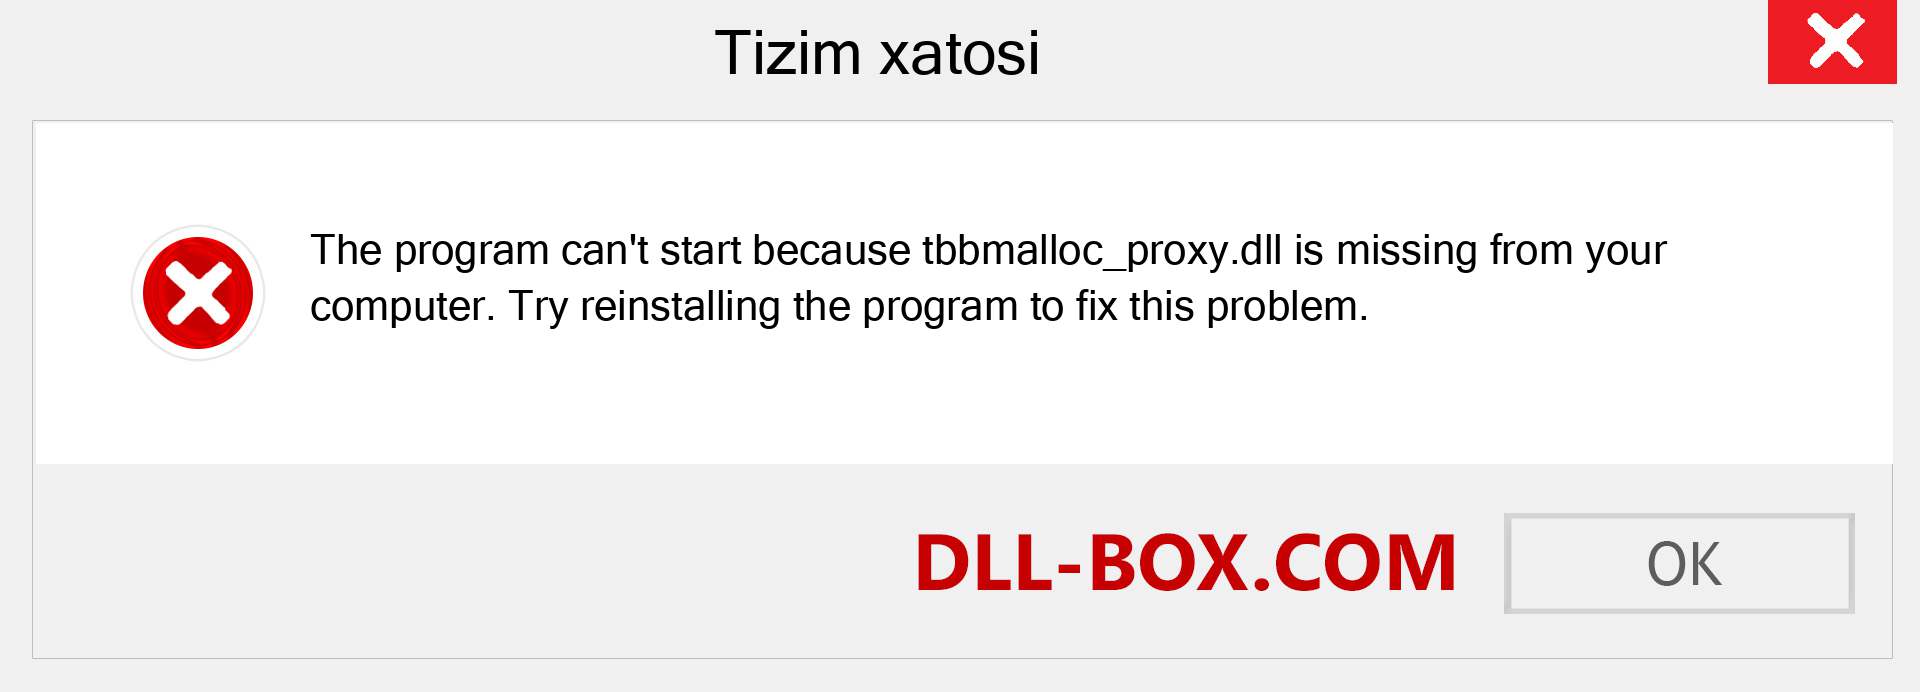 tbbmalloc_proxy.dll fayli yo'qolganmi?. Windows 7, 8, 10 uchun yuklab olish - Windowsda tbbmalloc_proxy dll etishmayotgan xatoni tuzating, rasmlar, rasmlar